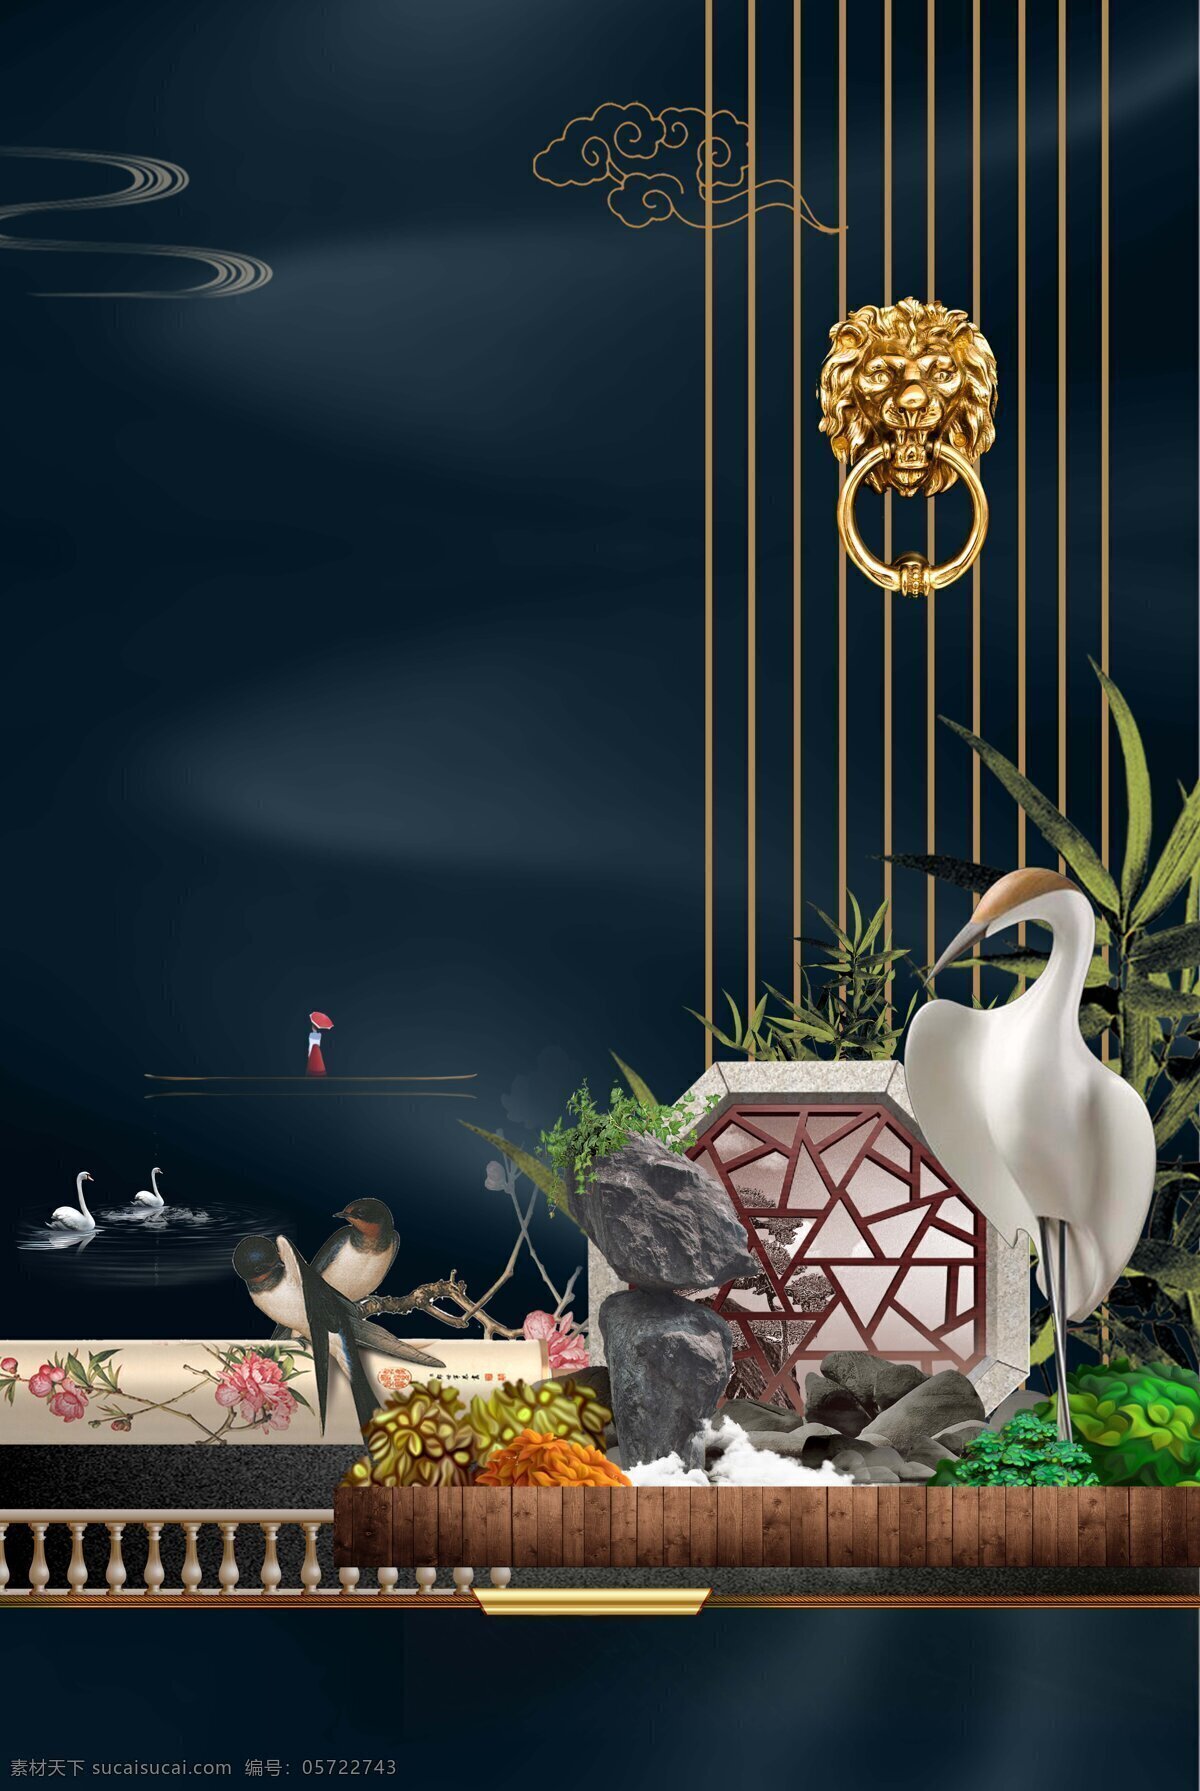 中国 风 家居装饰 背景 中国风 星空 线条 仙鹤 喜鹊 家居 海报 广告